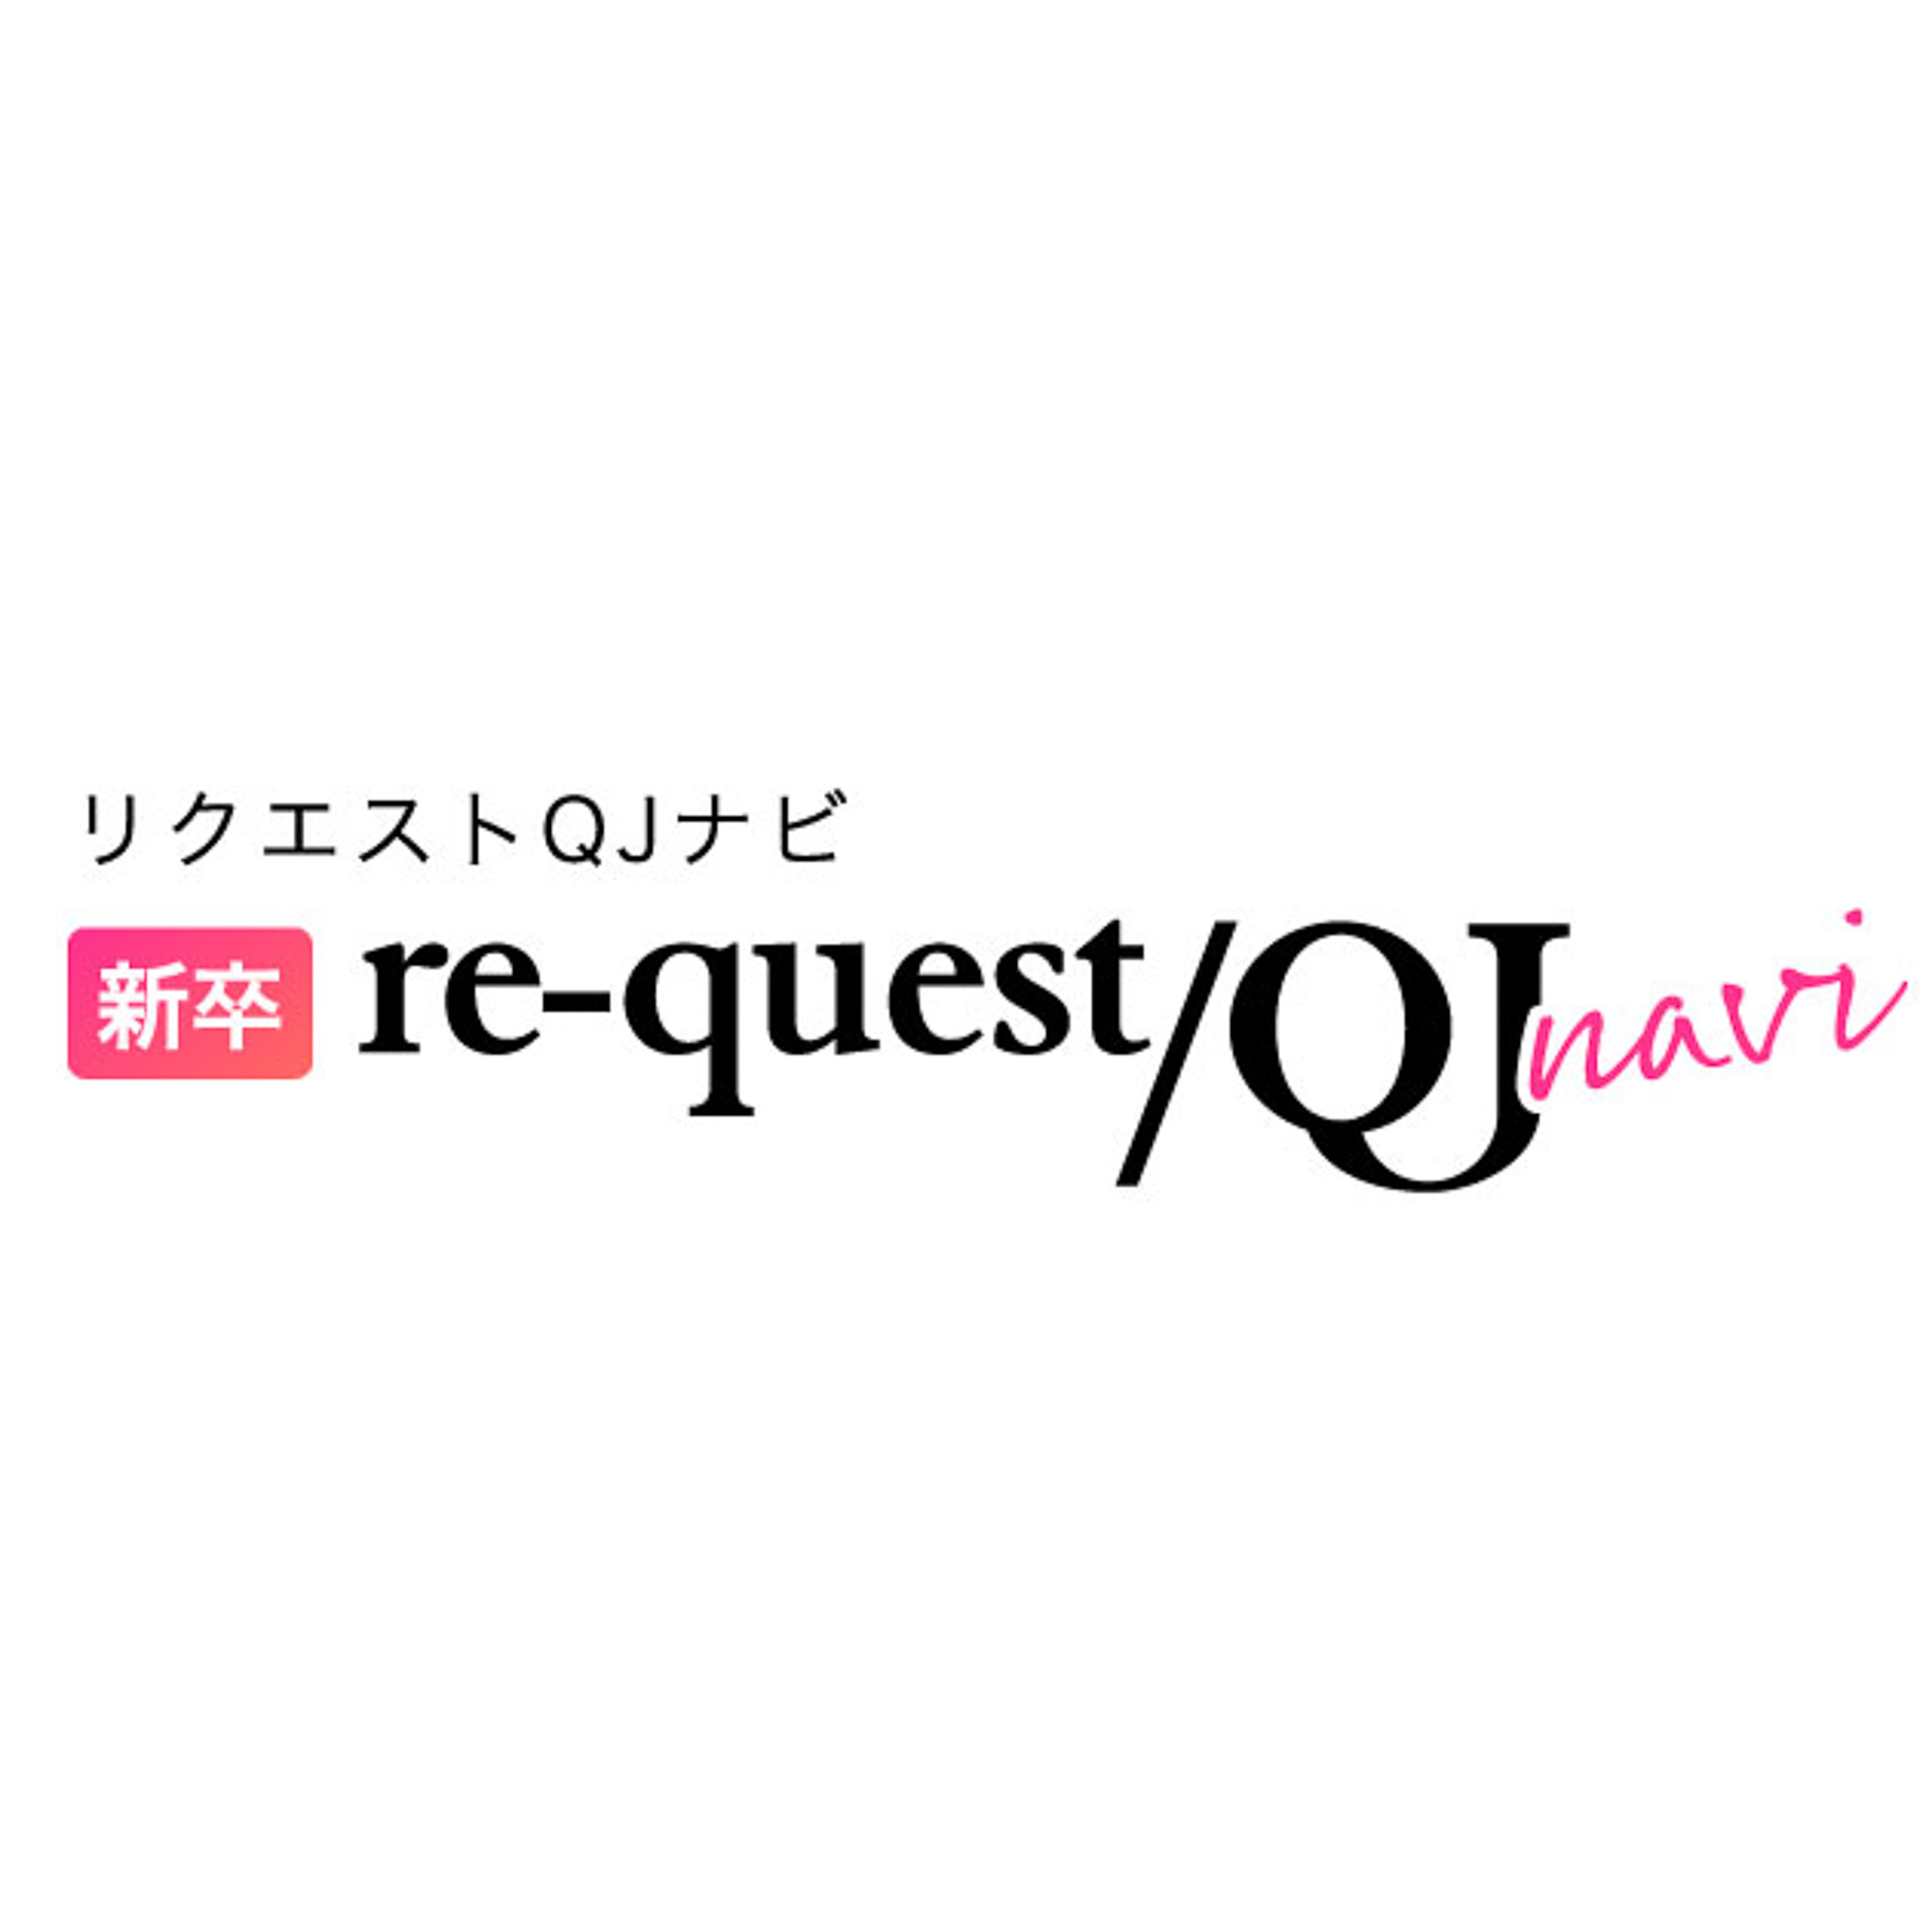 新卒re-quest/QJ navi